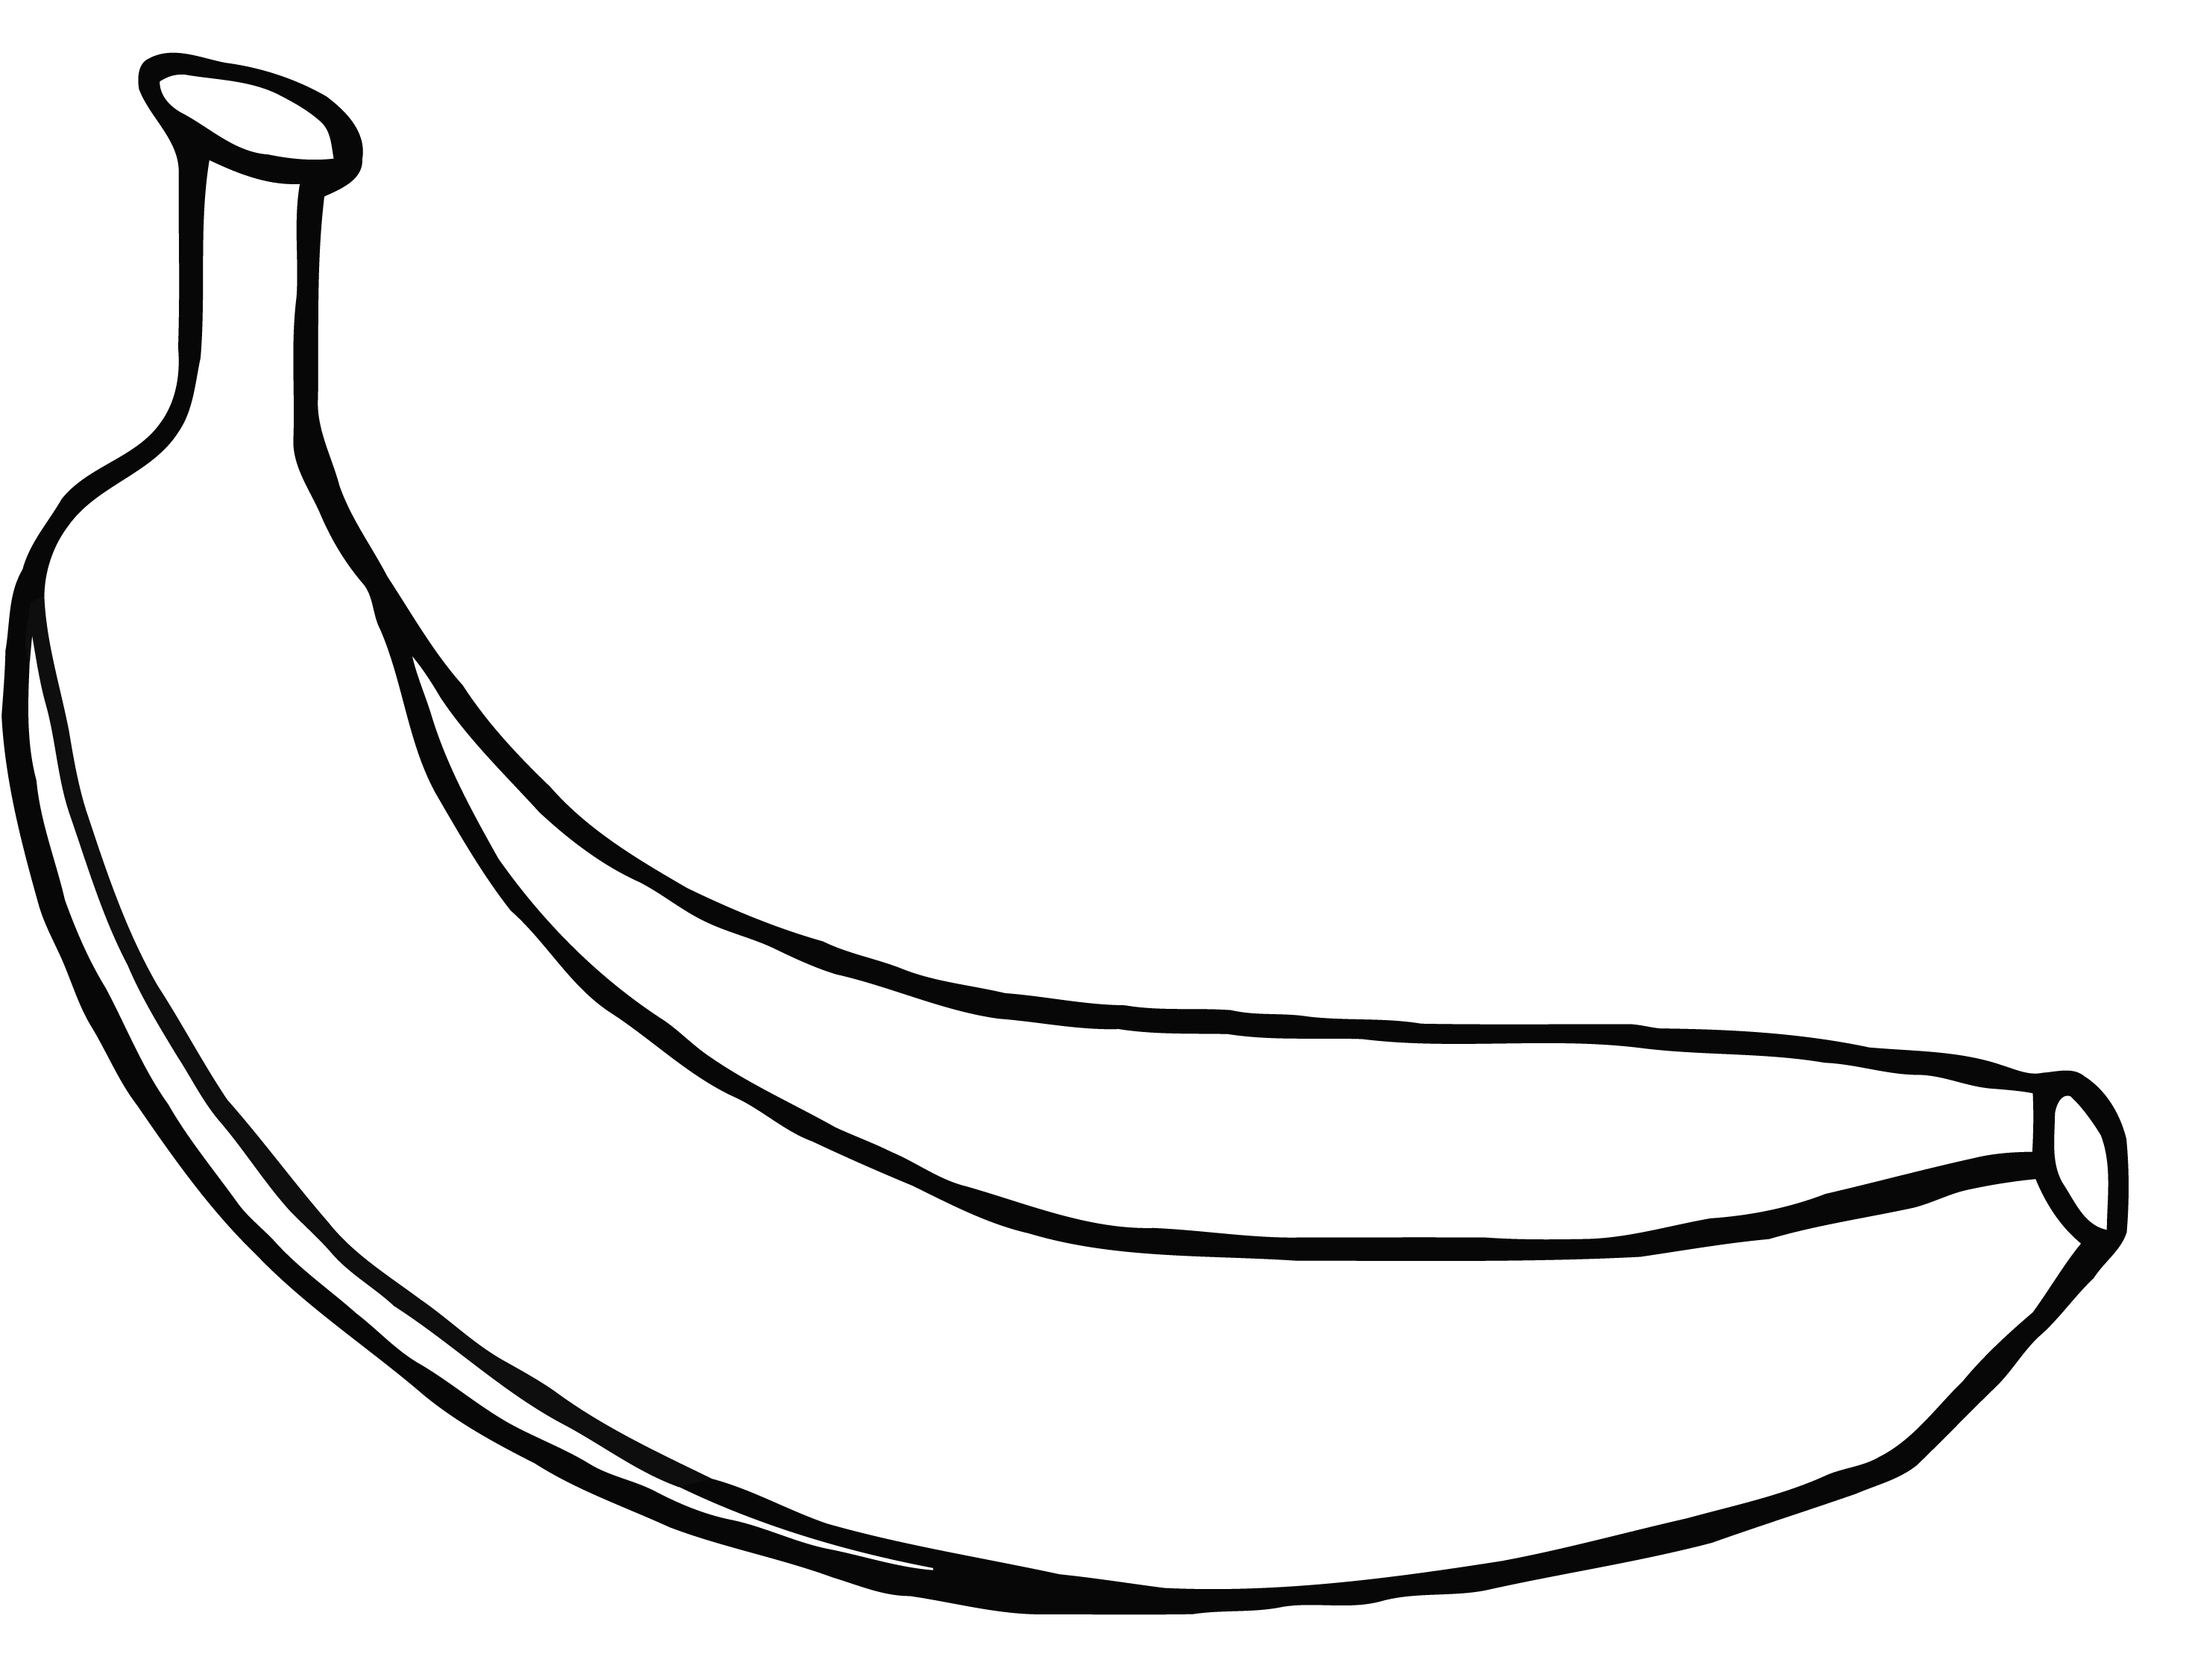 Banana Drawing at GetDrawings | Free download